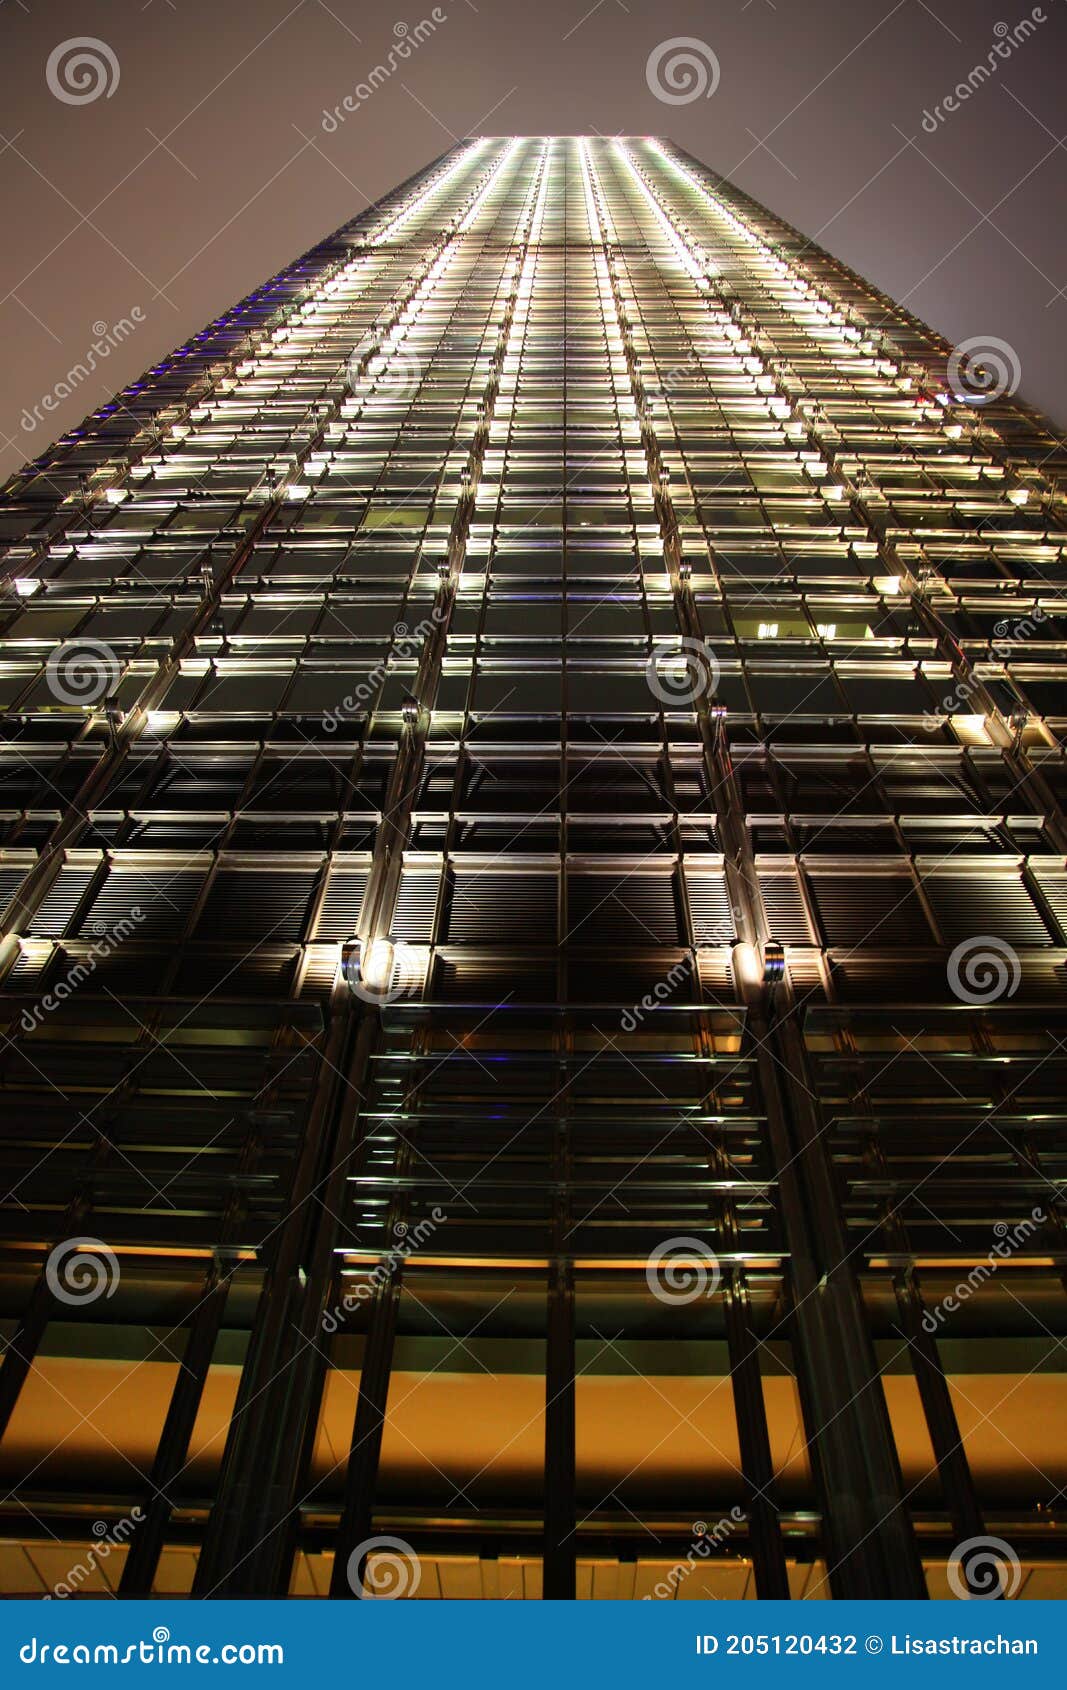 downtown skyscrapper at night, hong kong, china